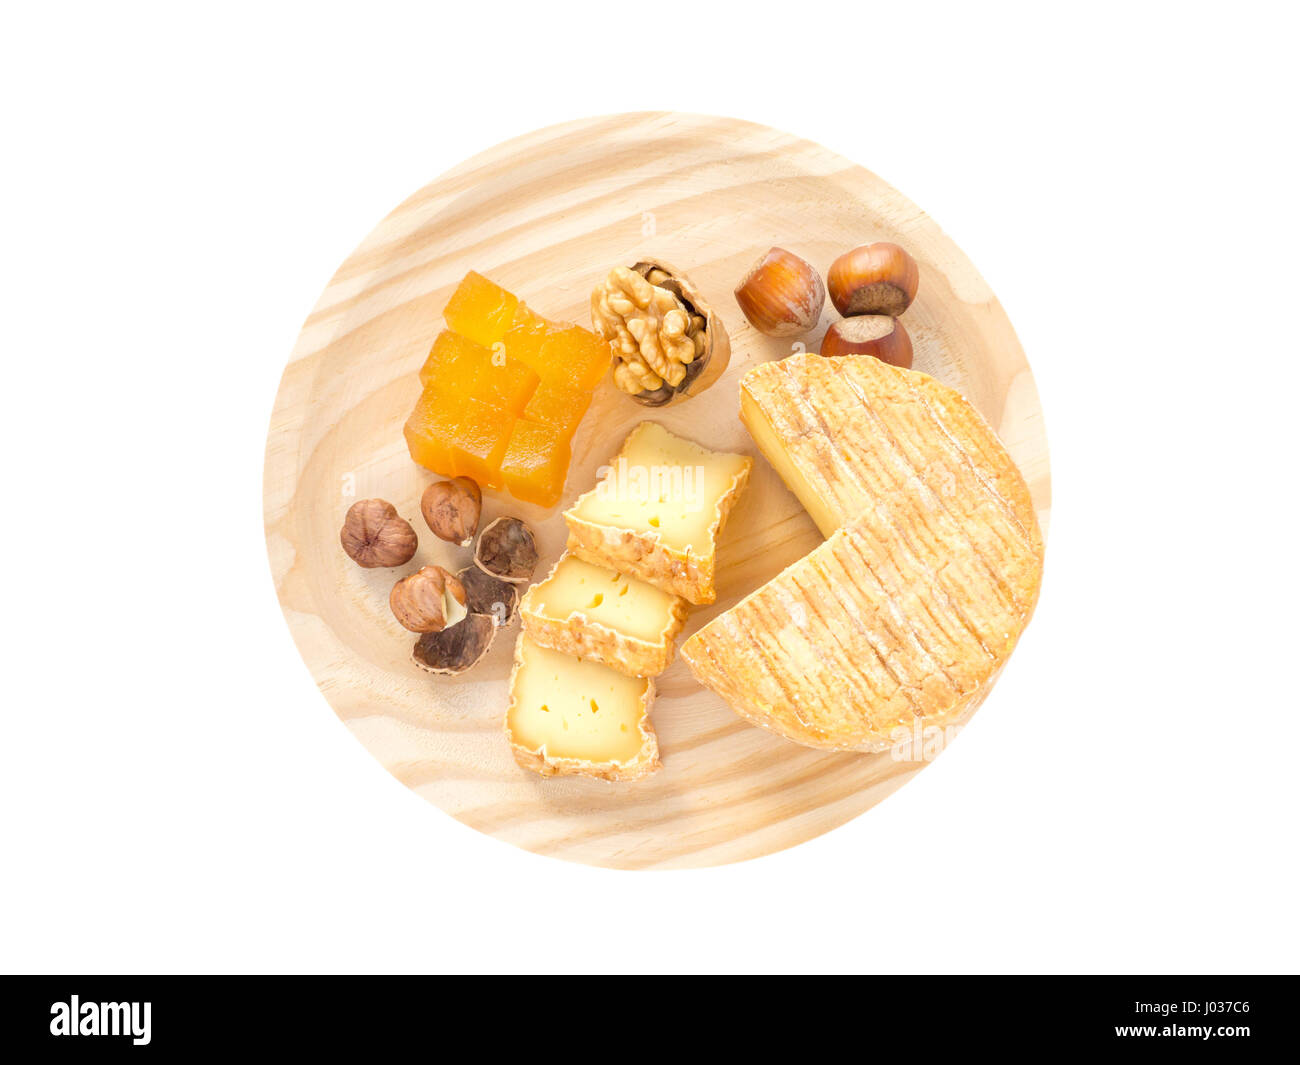 Soft croûte lavée, noisettes, noix et de la marmelade sur la planche de bois texturés top view isolated on white Banque D'Images